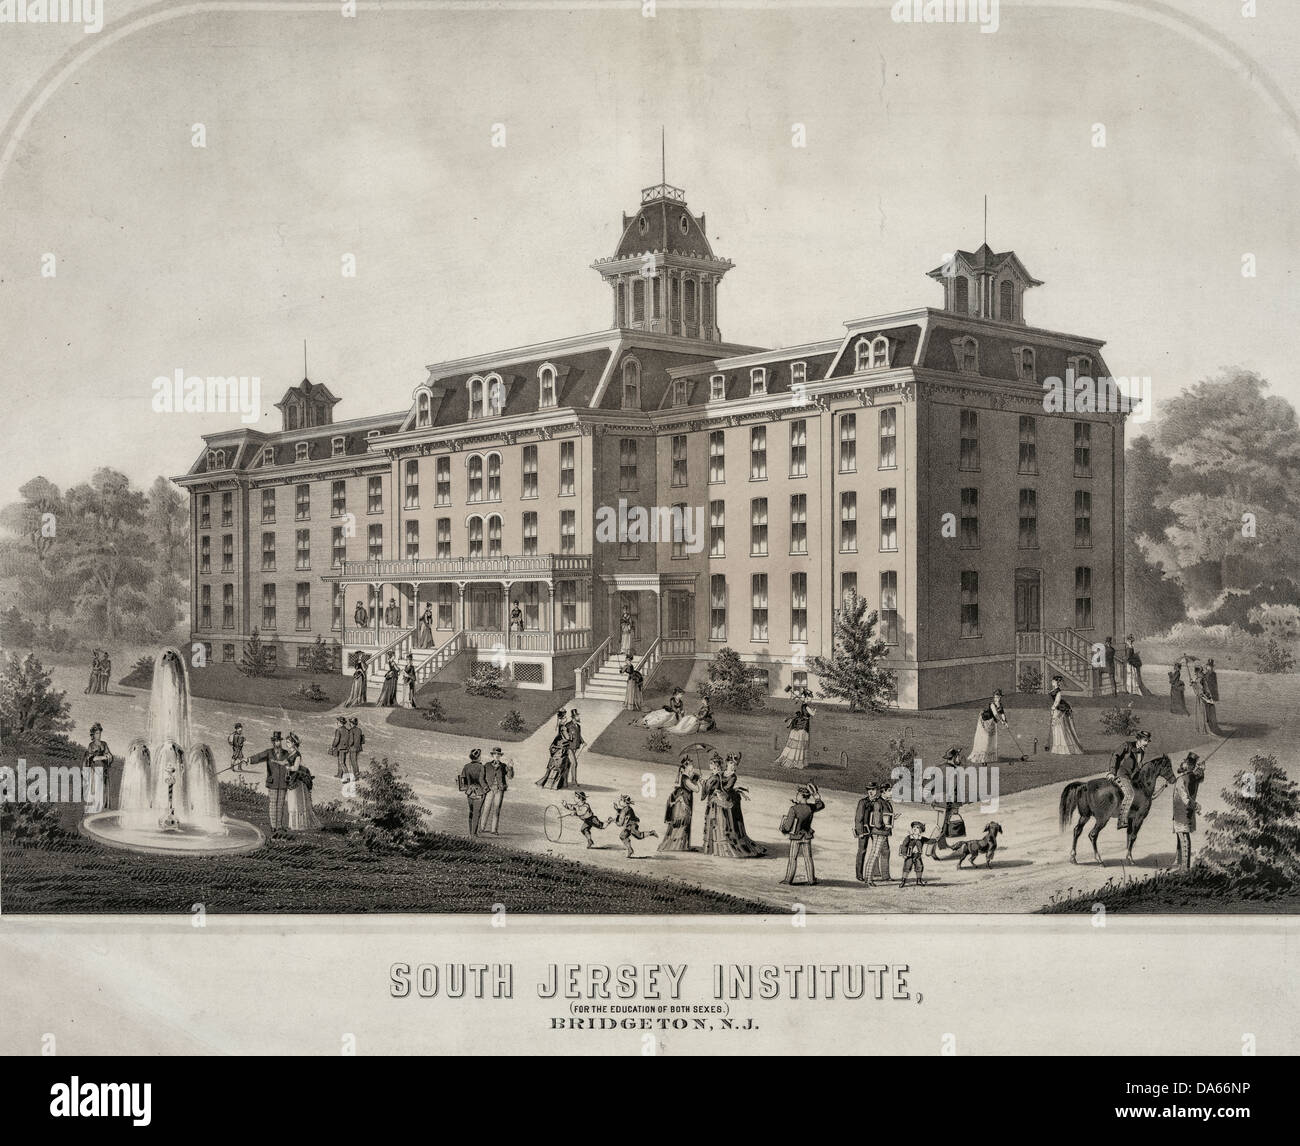 South Jersey Institute. (Für die Ausbildung von beiden Geschlechtern). Bridgeton, NJ, um 1880 Stockfoto